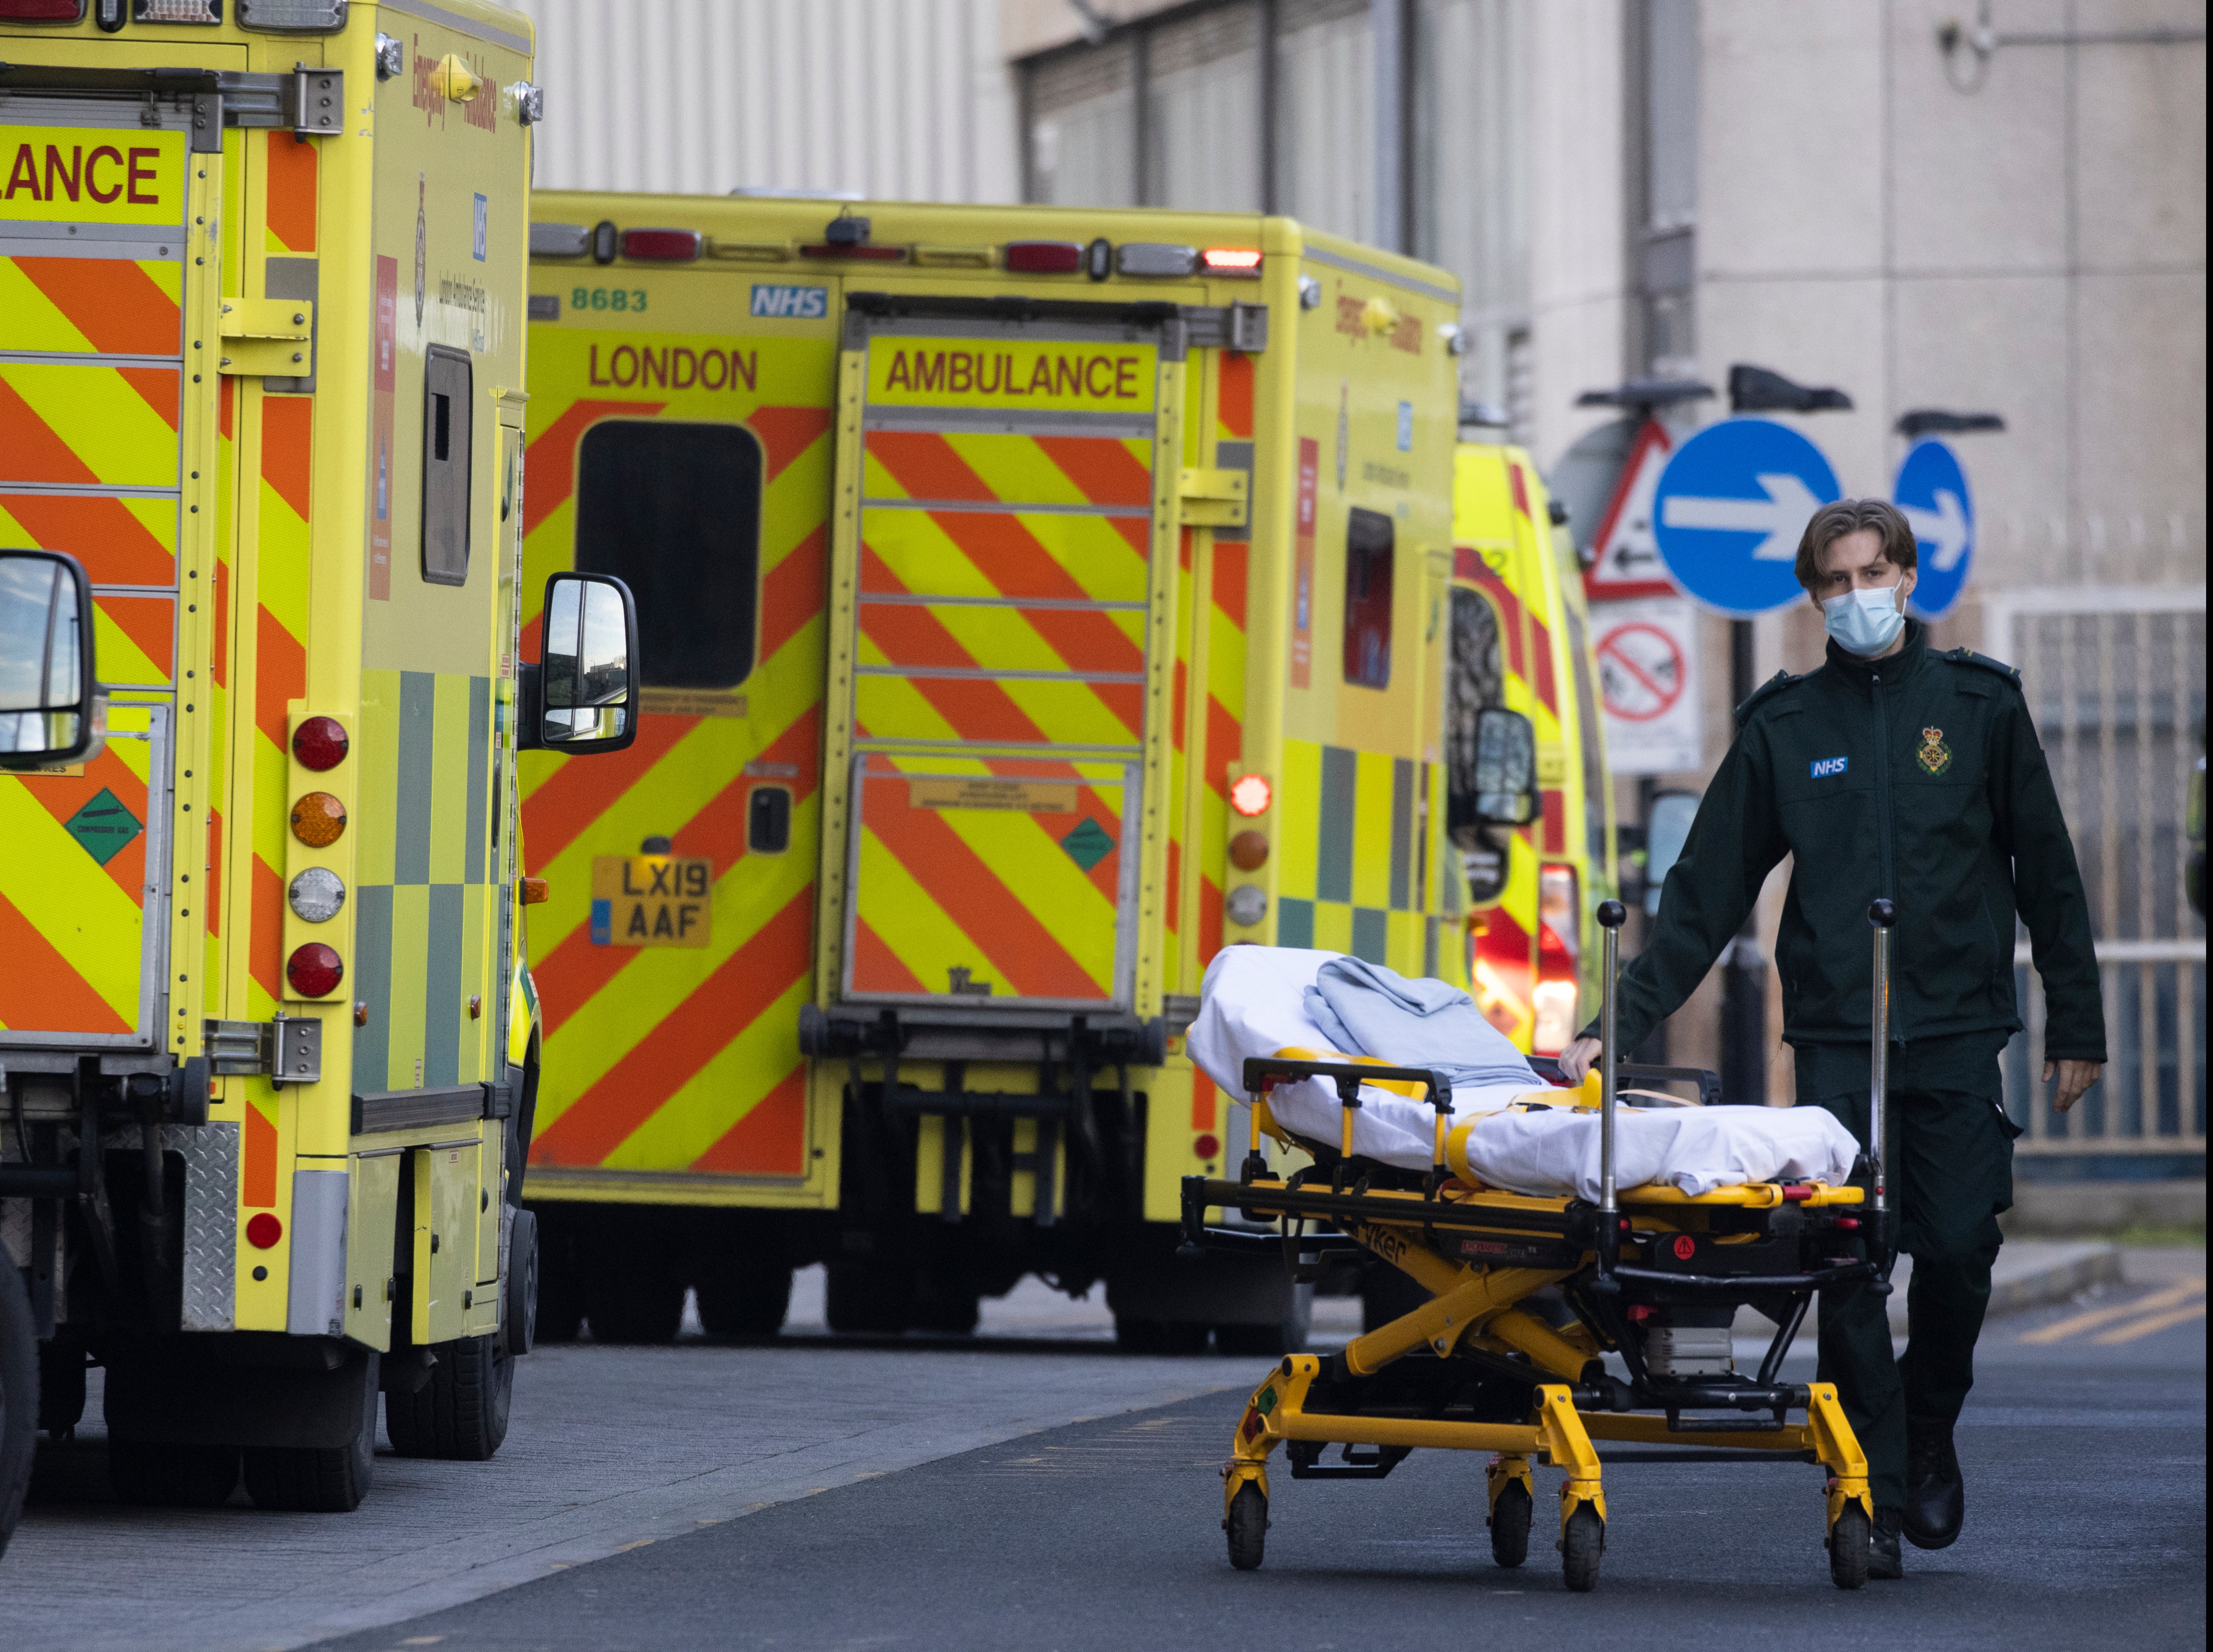 Ambulances at the Royal London Hospital this week